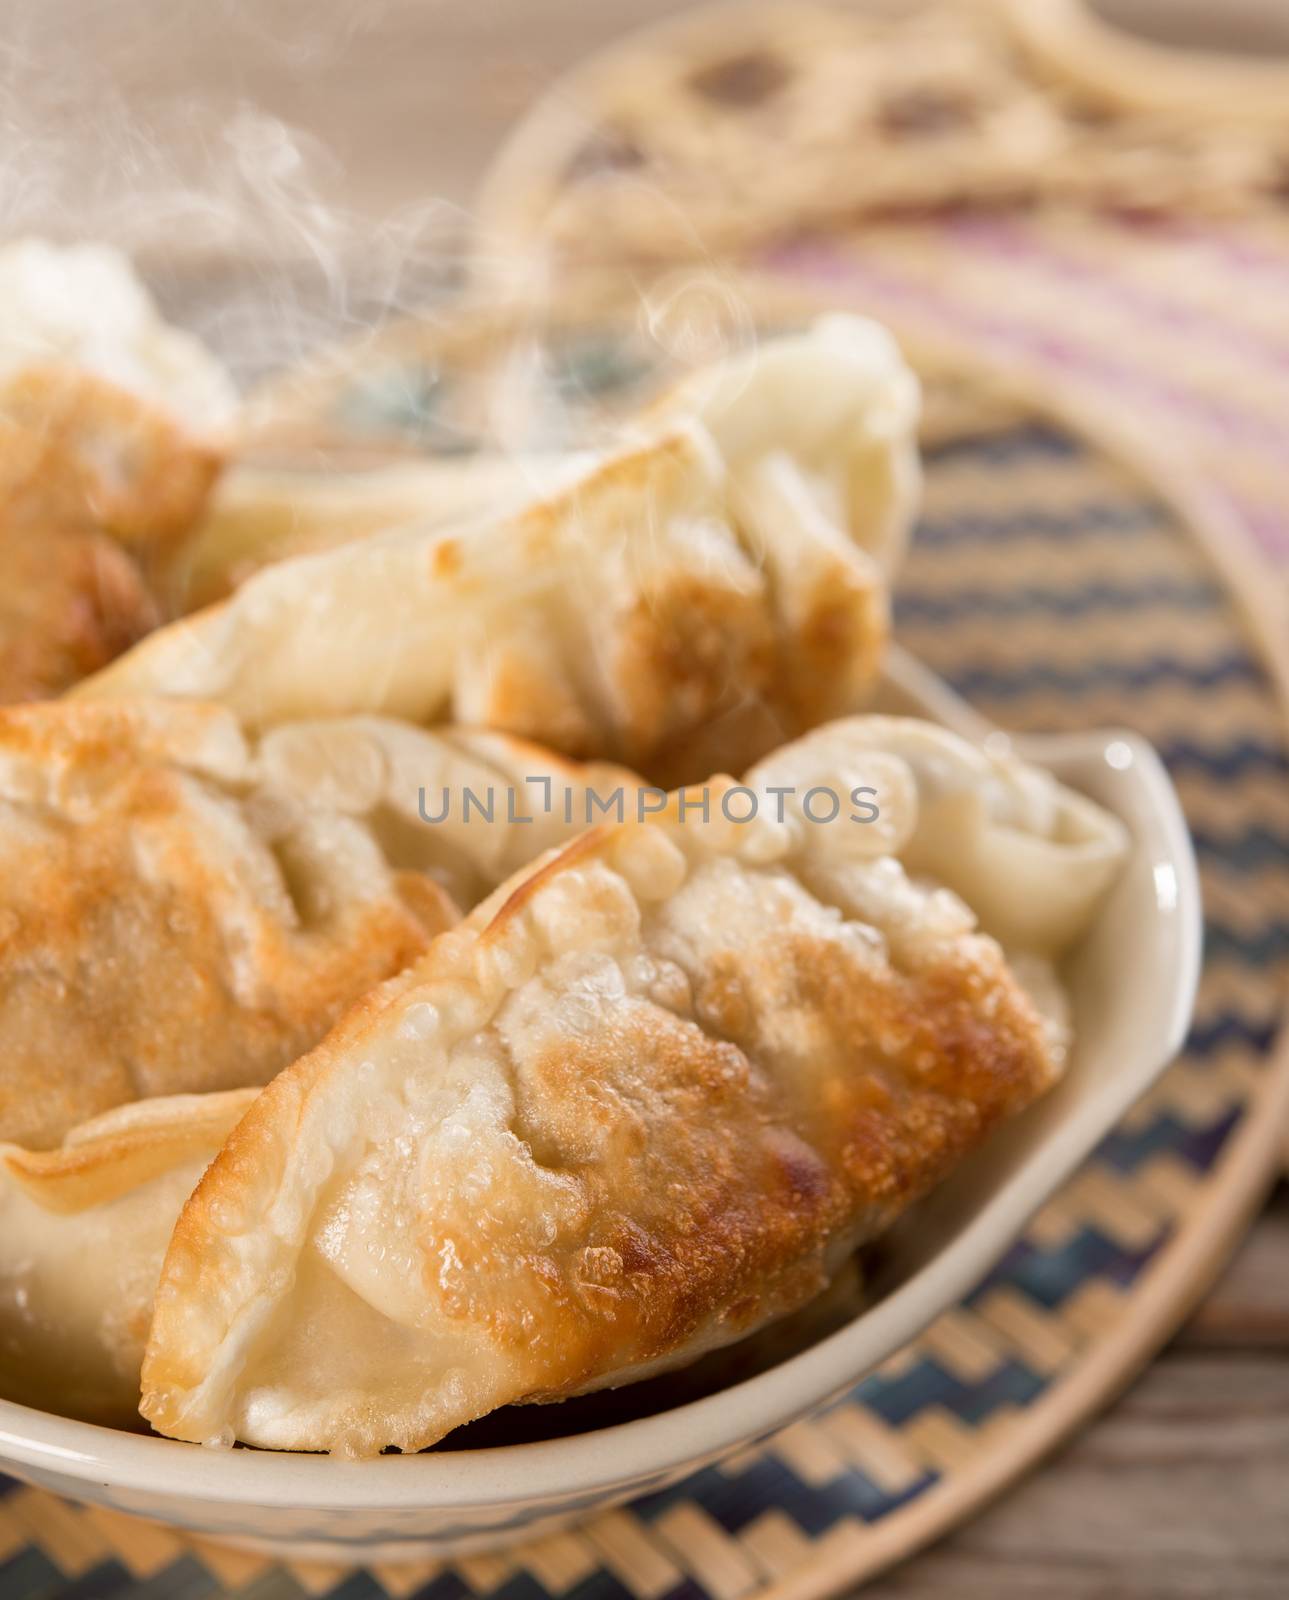 Famous Asian cuisine pan fried dumplings by szefei